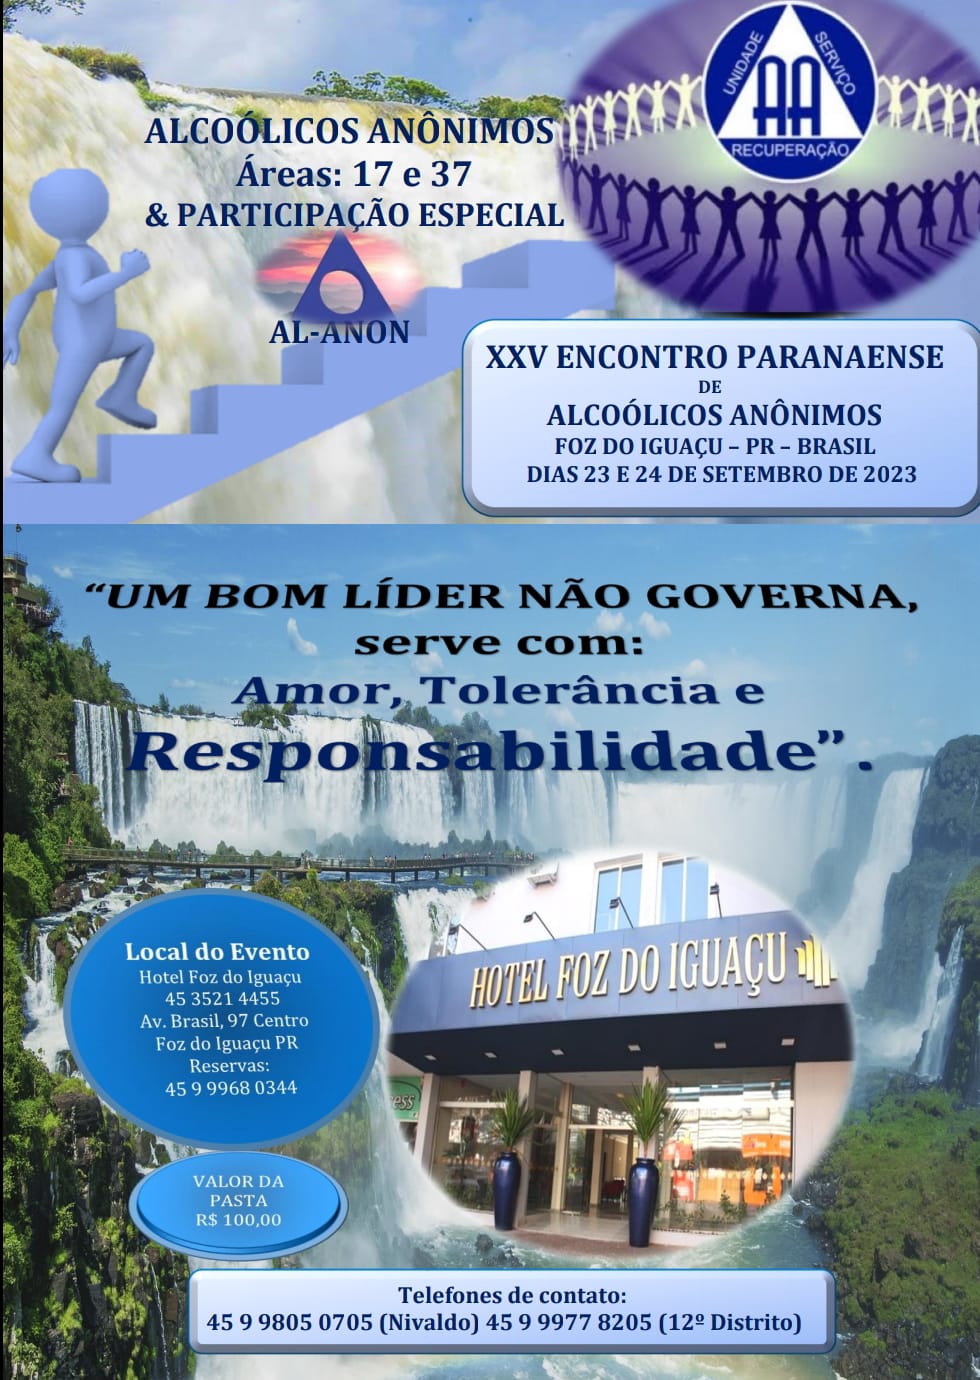 WhatsApp-Image-2023-09-21-at-09.20.38 Representantes do AA de Monteiro e de cidades do Cariri, vão realizar palestra no XXV ENCONTRO PARANAENS de ALCOÓLICOS ANÔNIMOS